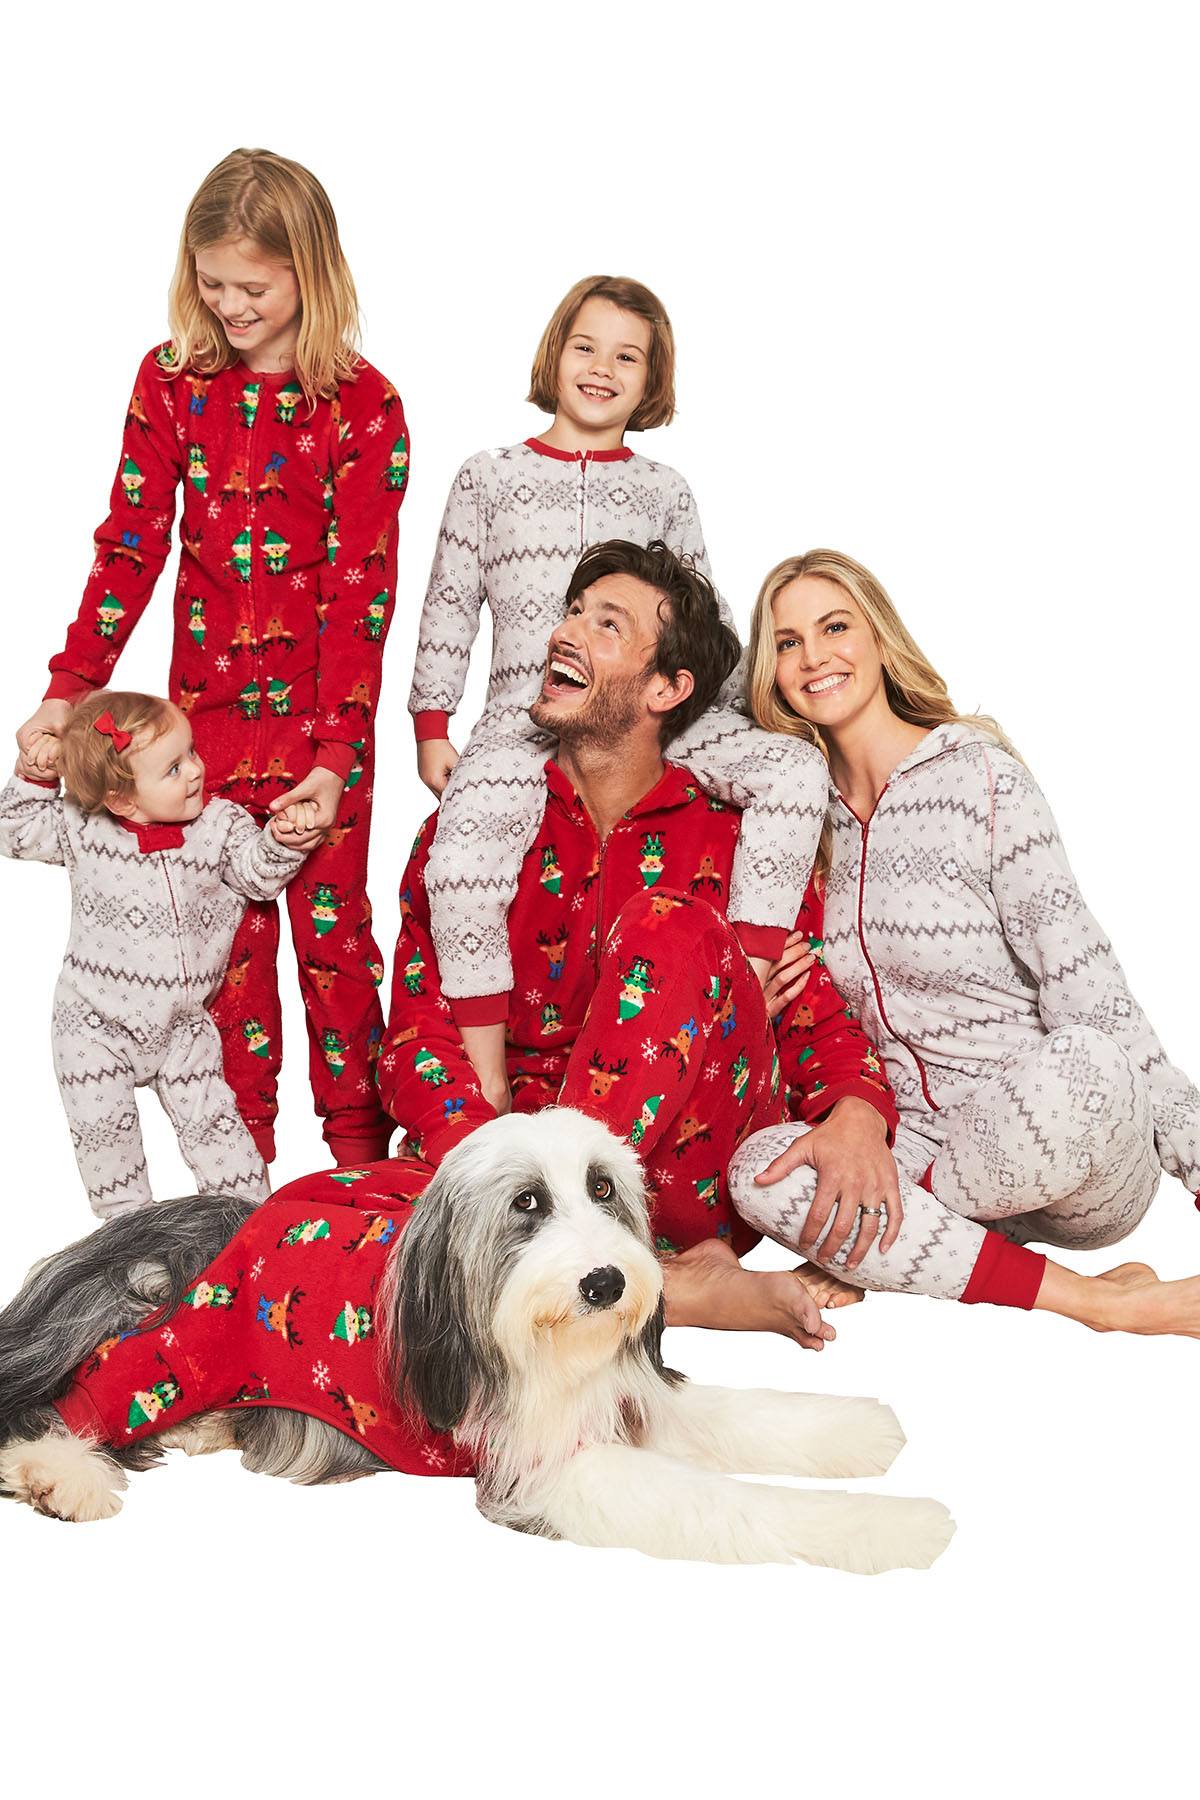 Family PJs Men Hooded Pajama Onesie in Winter Fairisle